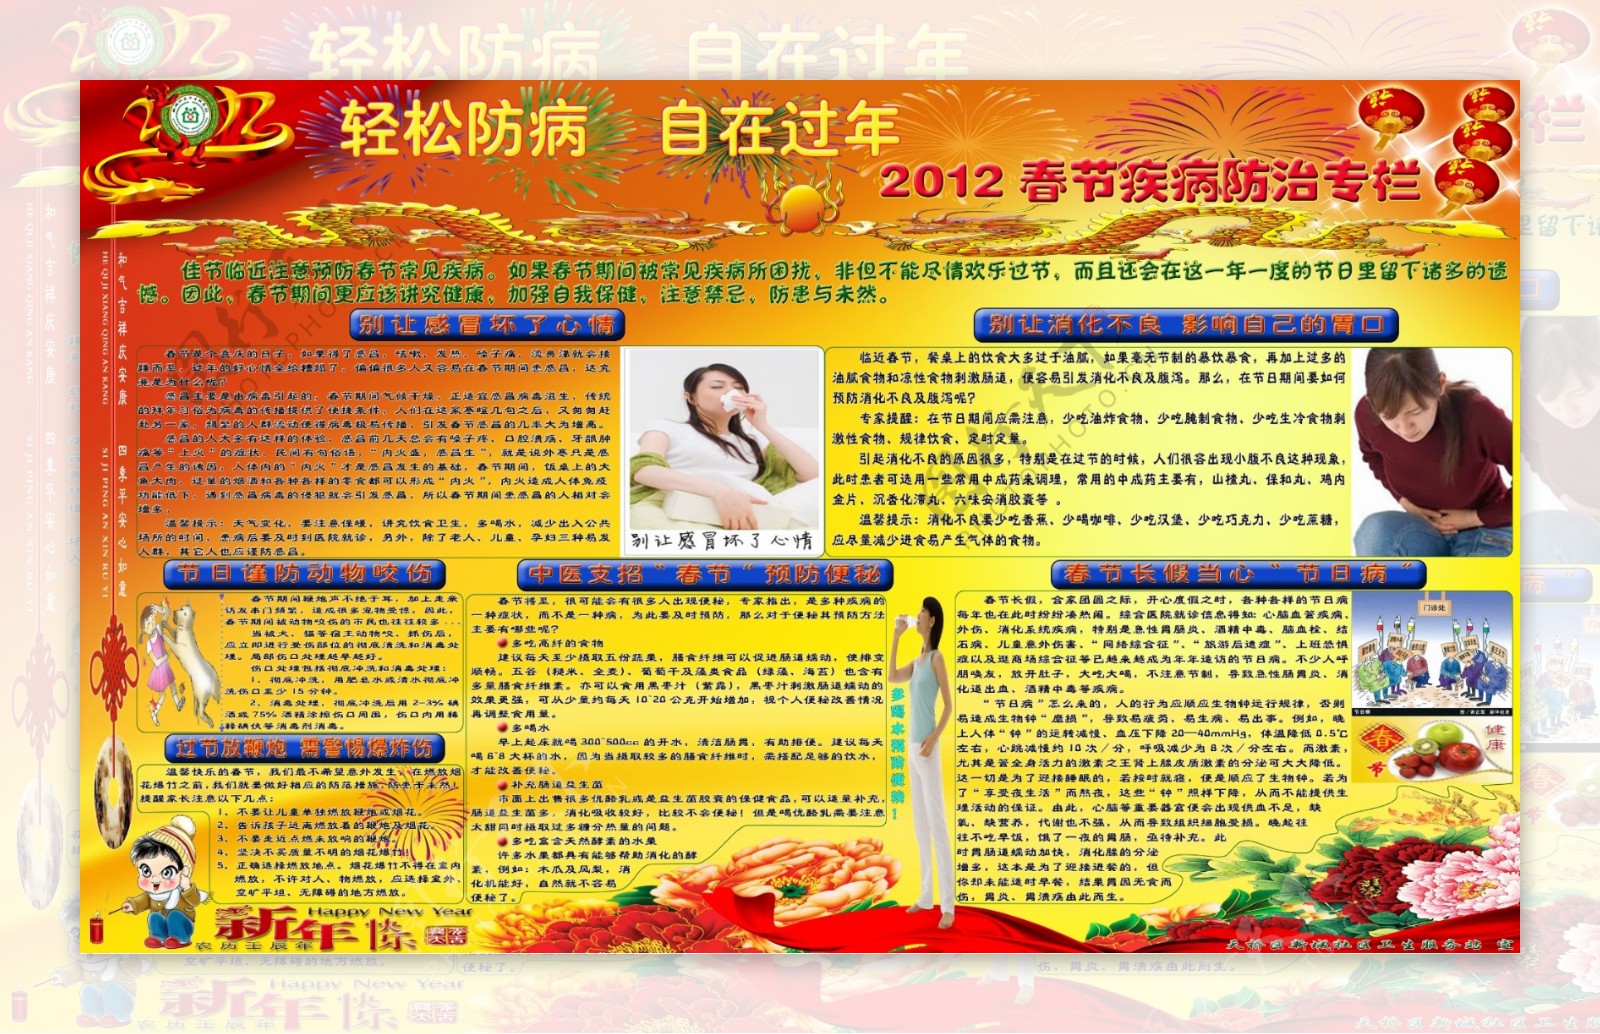 2012春节疾病预防专栏图片